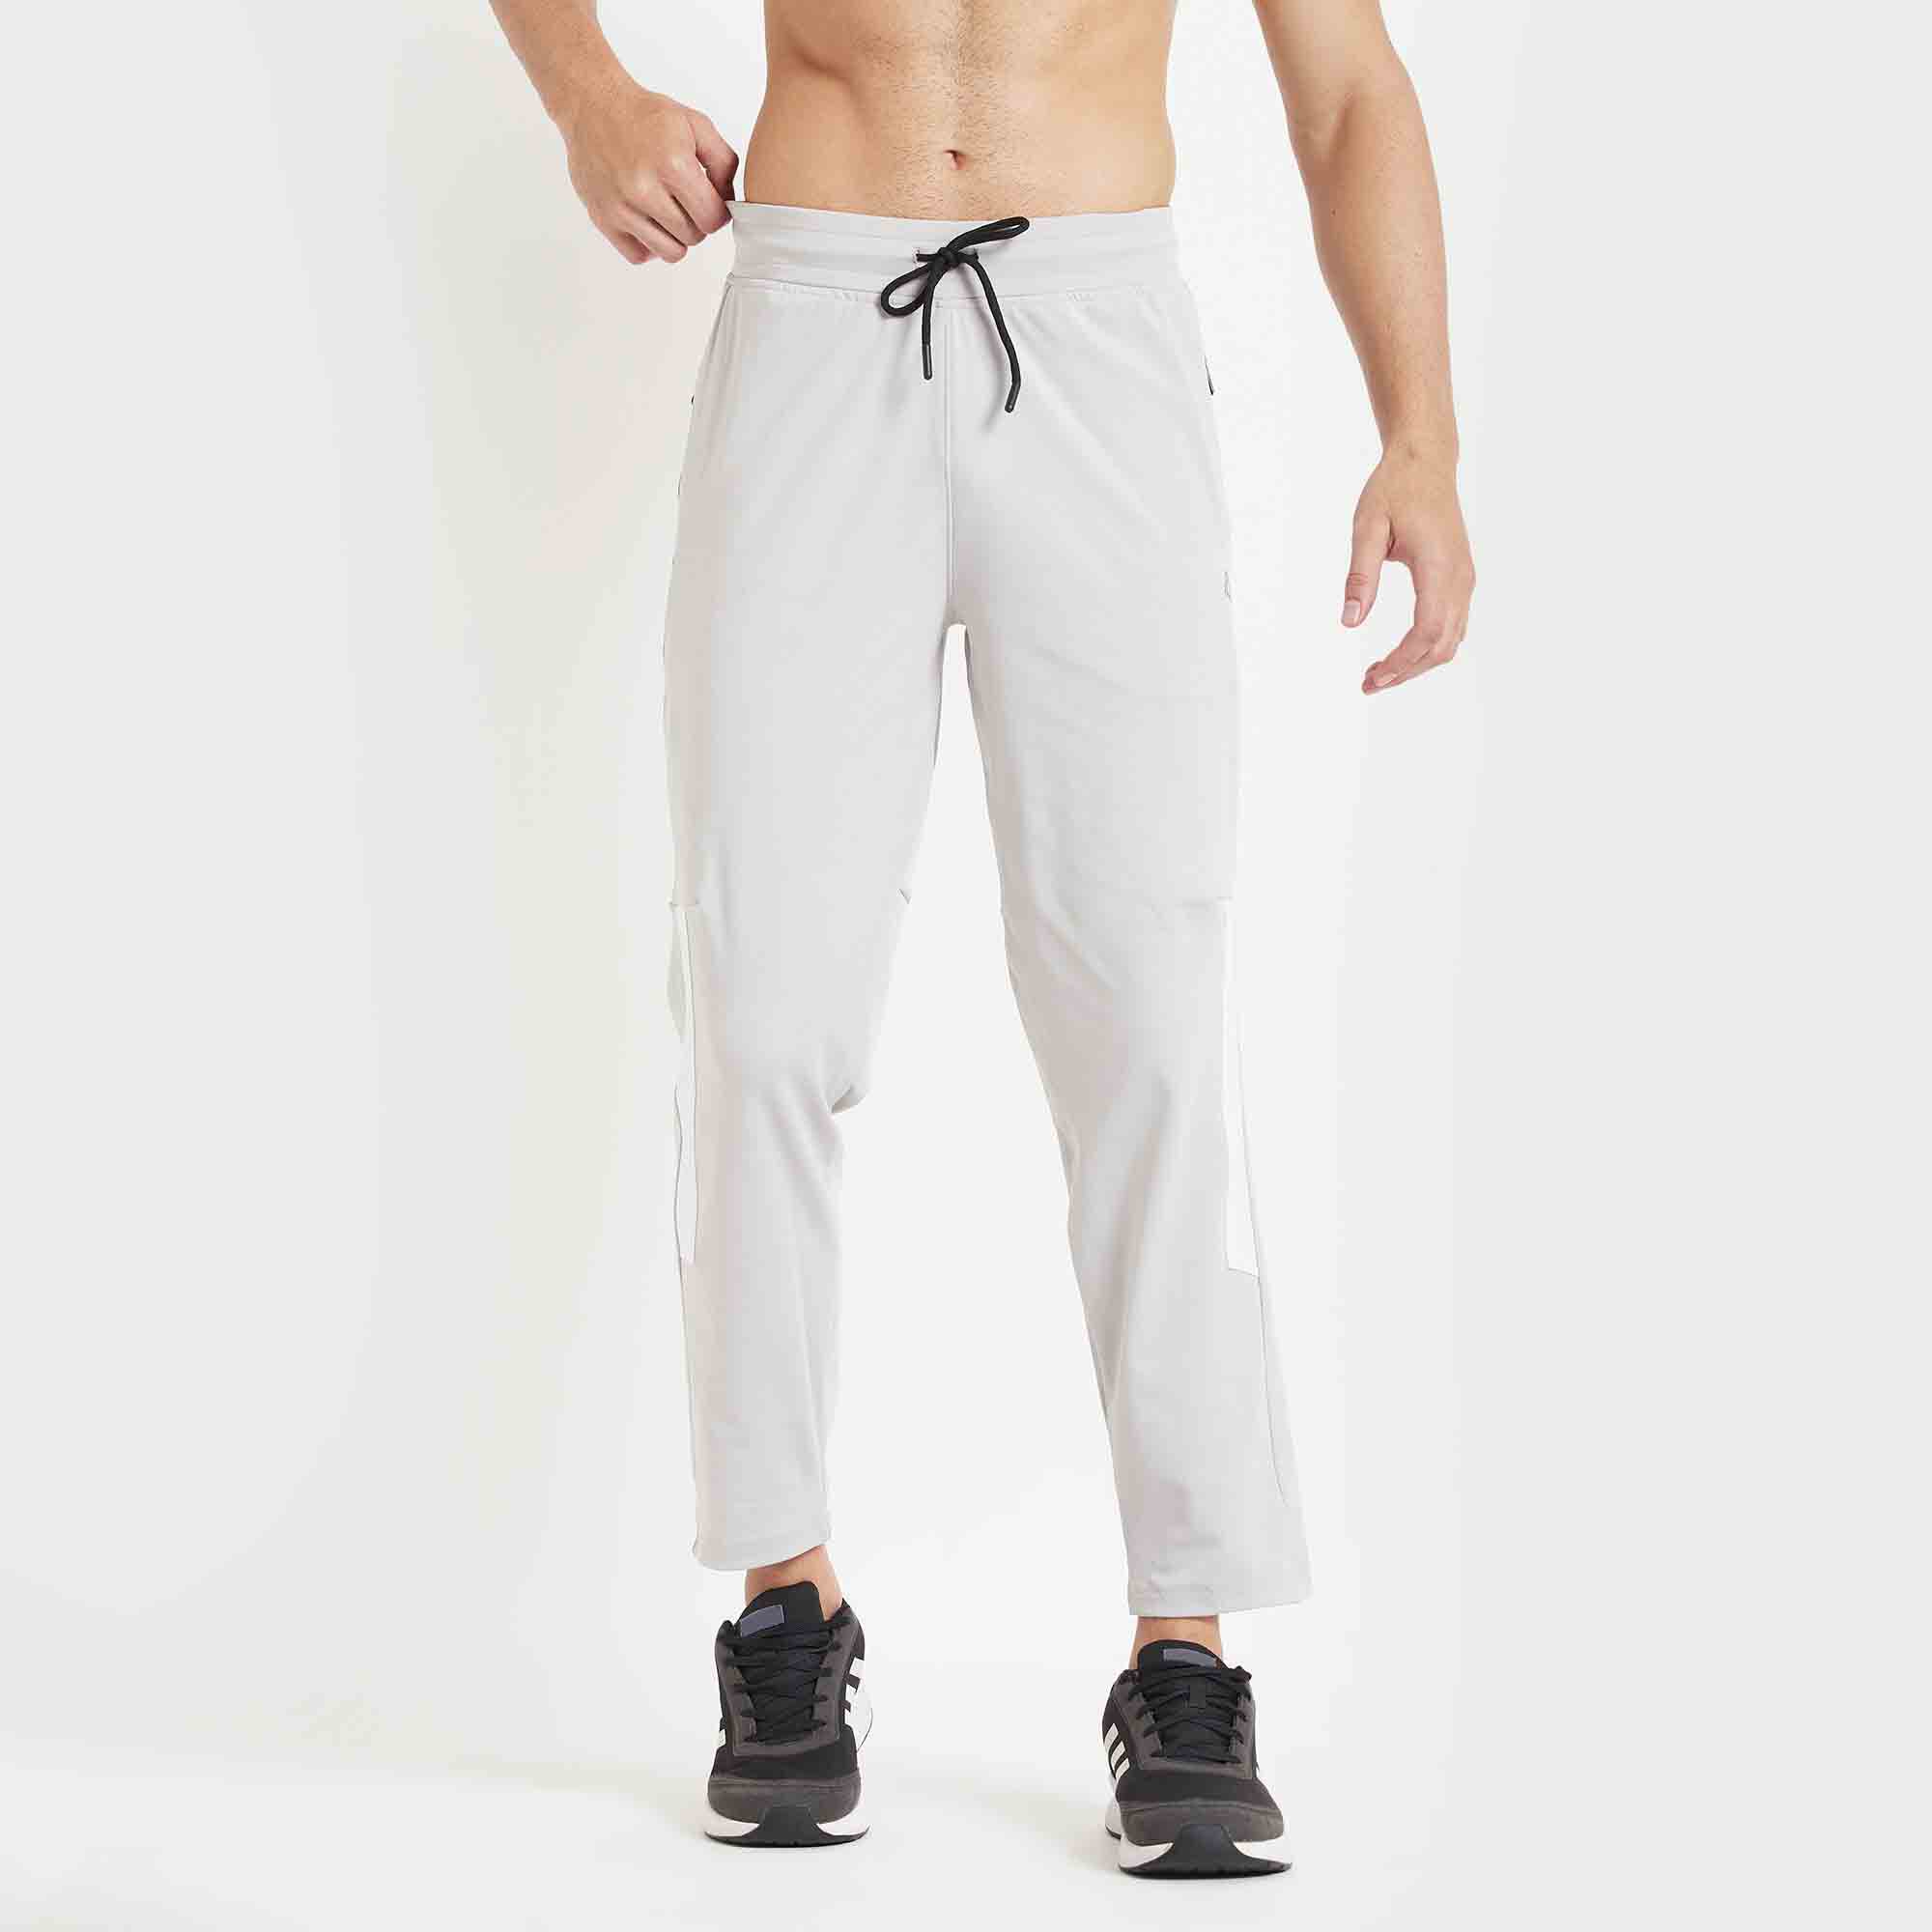 Buy HIGHLANDER Men Black Solid Slim Fit Track Pants - Track Pants for Men  9838377 | Myntra